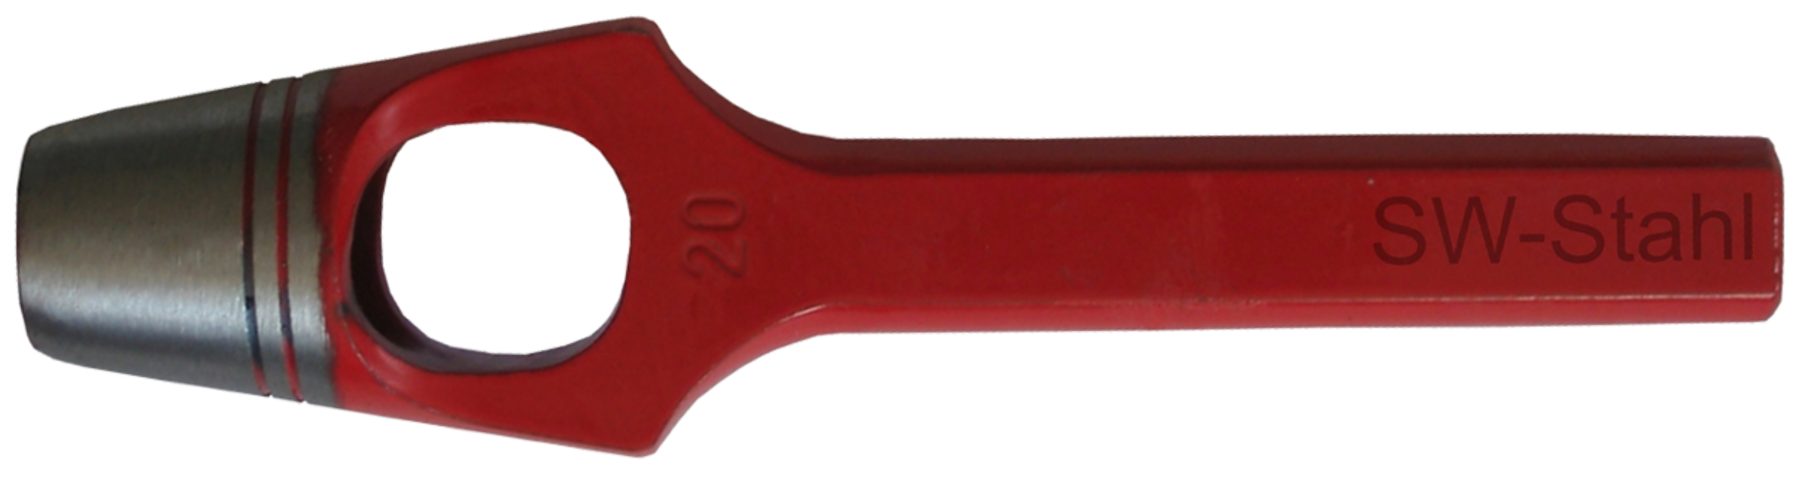 SW-STAHL Multitool 95010L Henkellocheisen ø 10 mm, rot lackiert, geschliffen